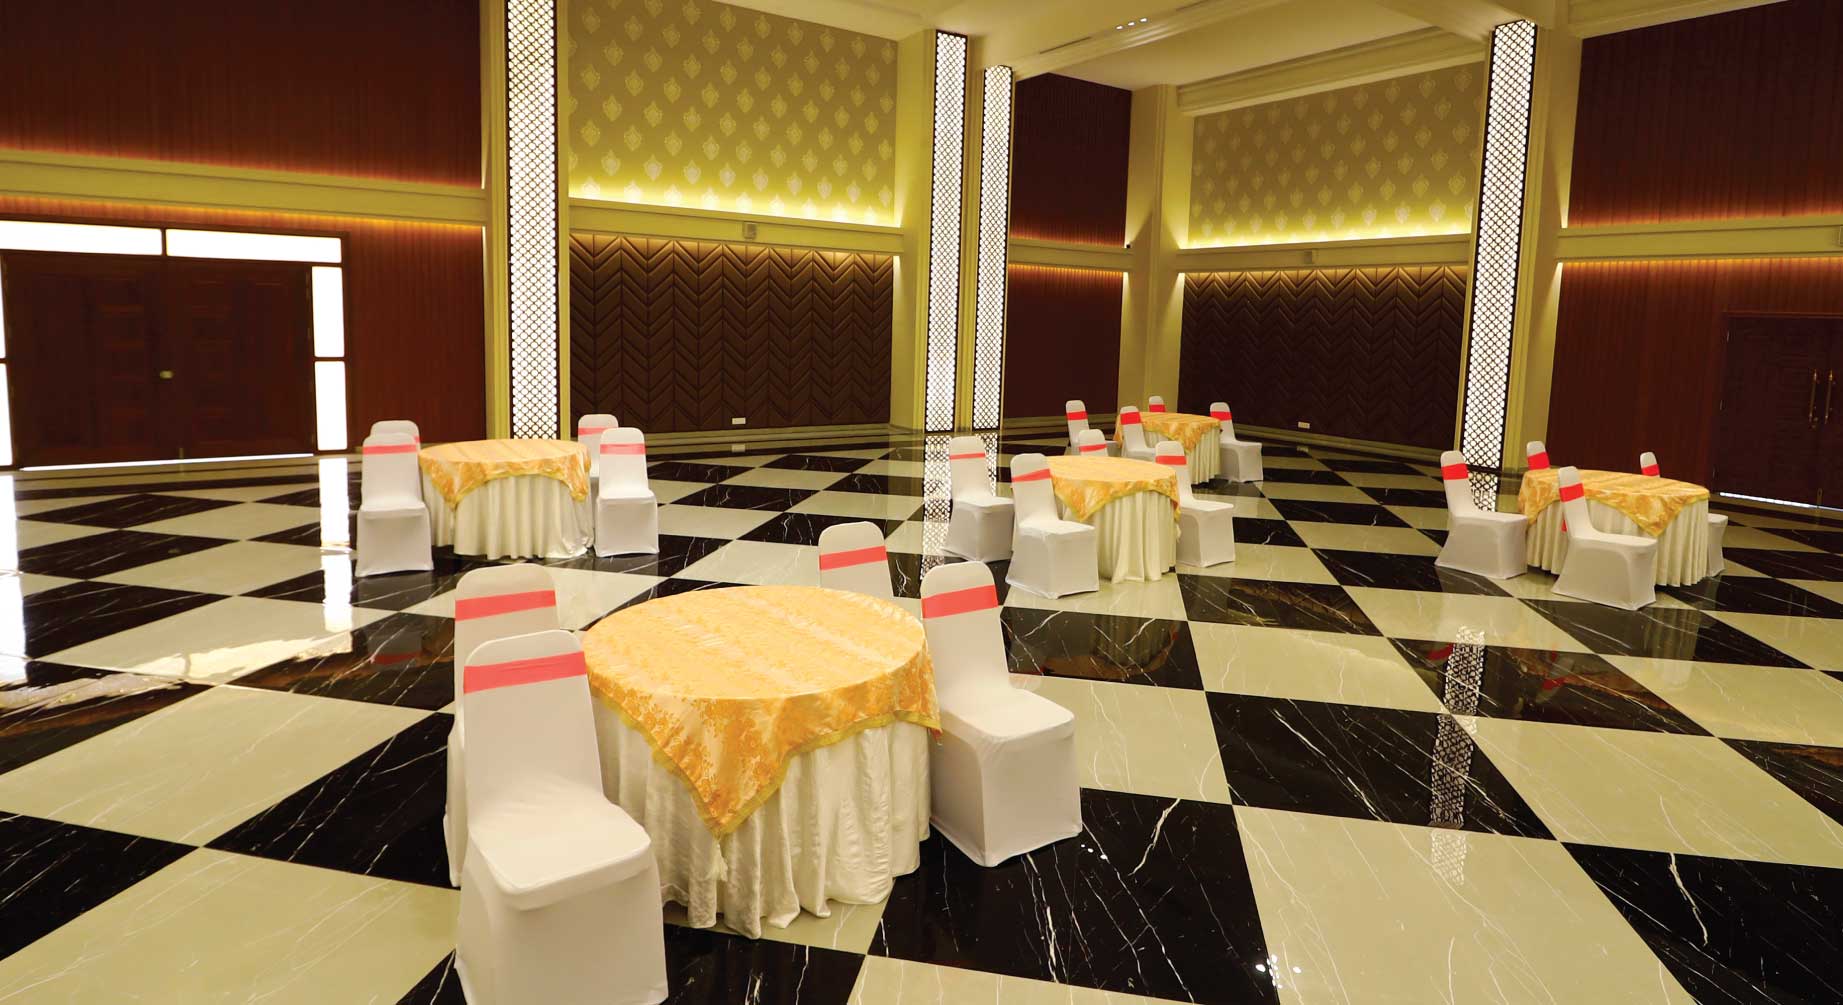 Nishigandha banquet halls in mulshi pune